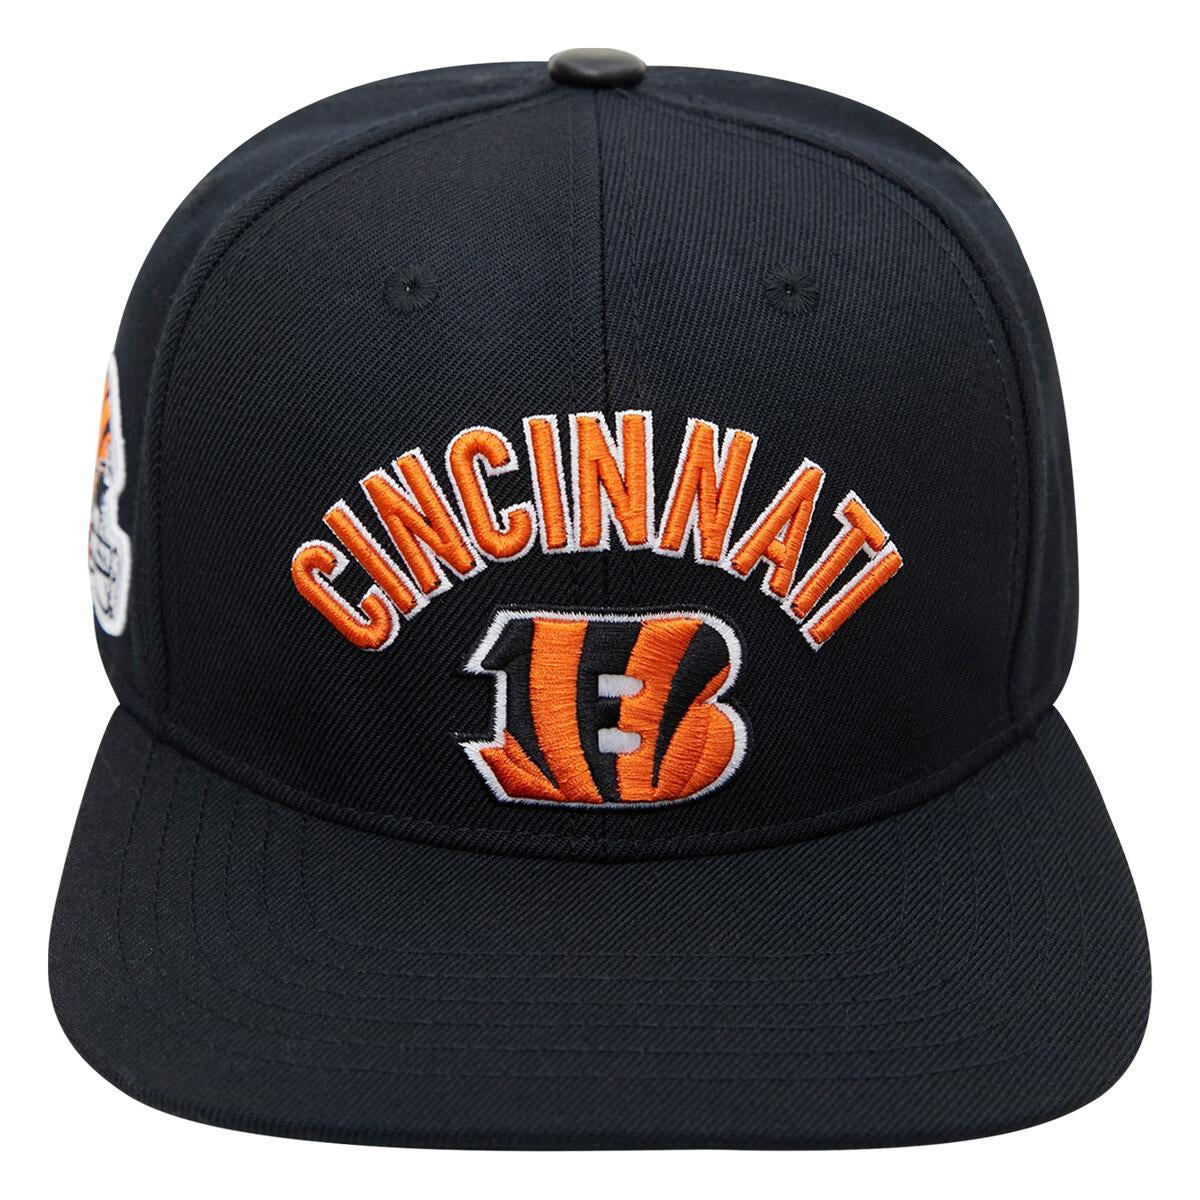 Pro Standard Cincinnati Bengals Stacked Logo Snapback